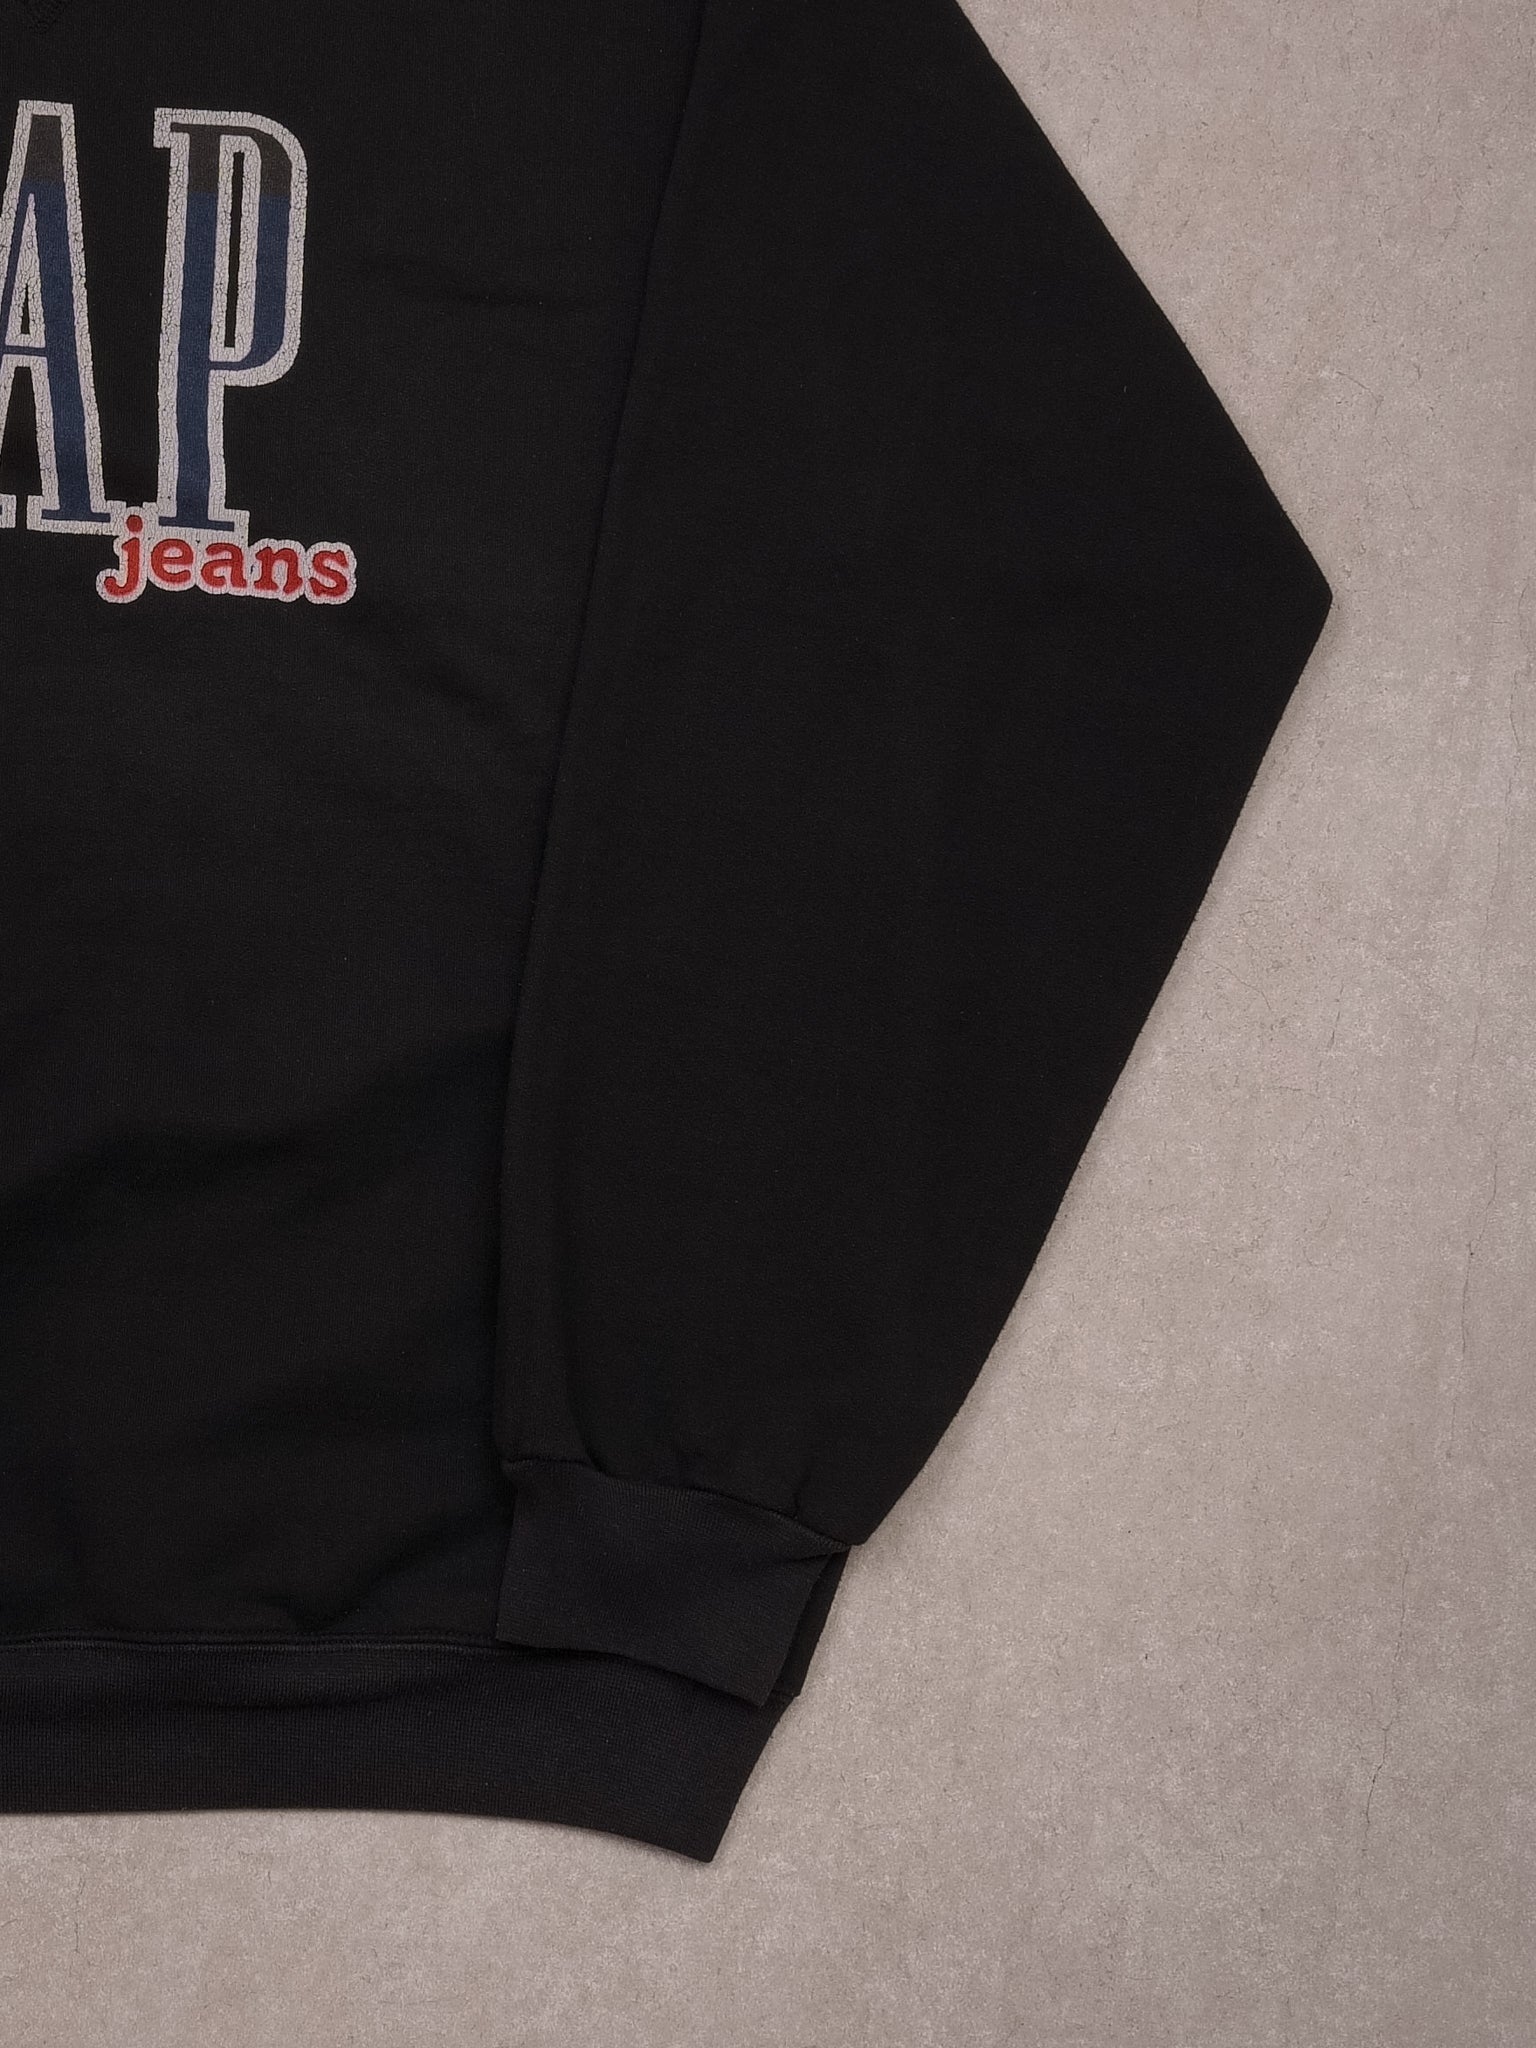 Vintage 90s Black Gap Jeans Crewneck (M)